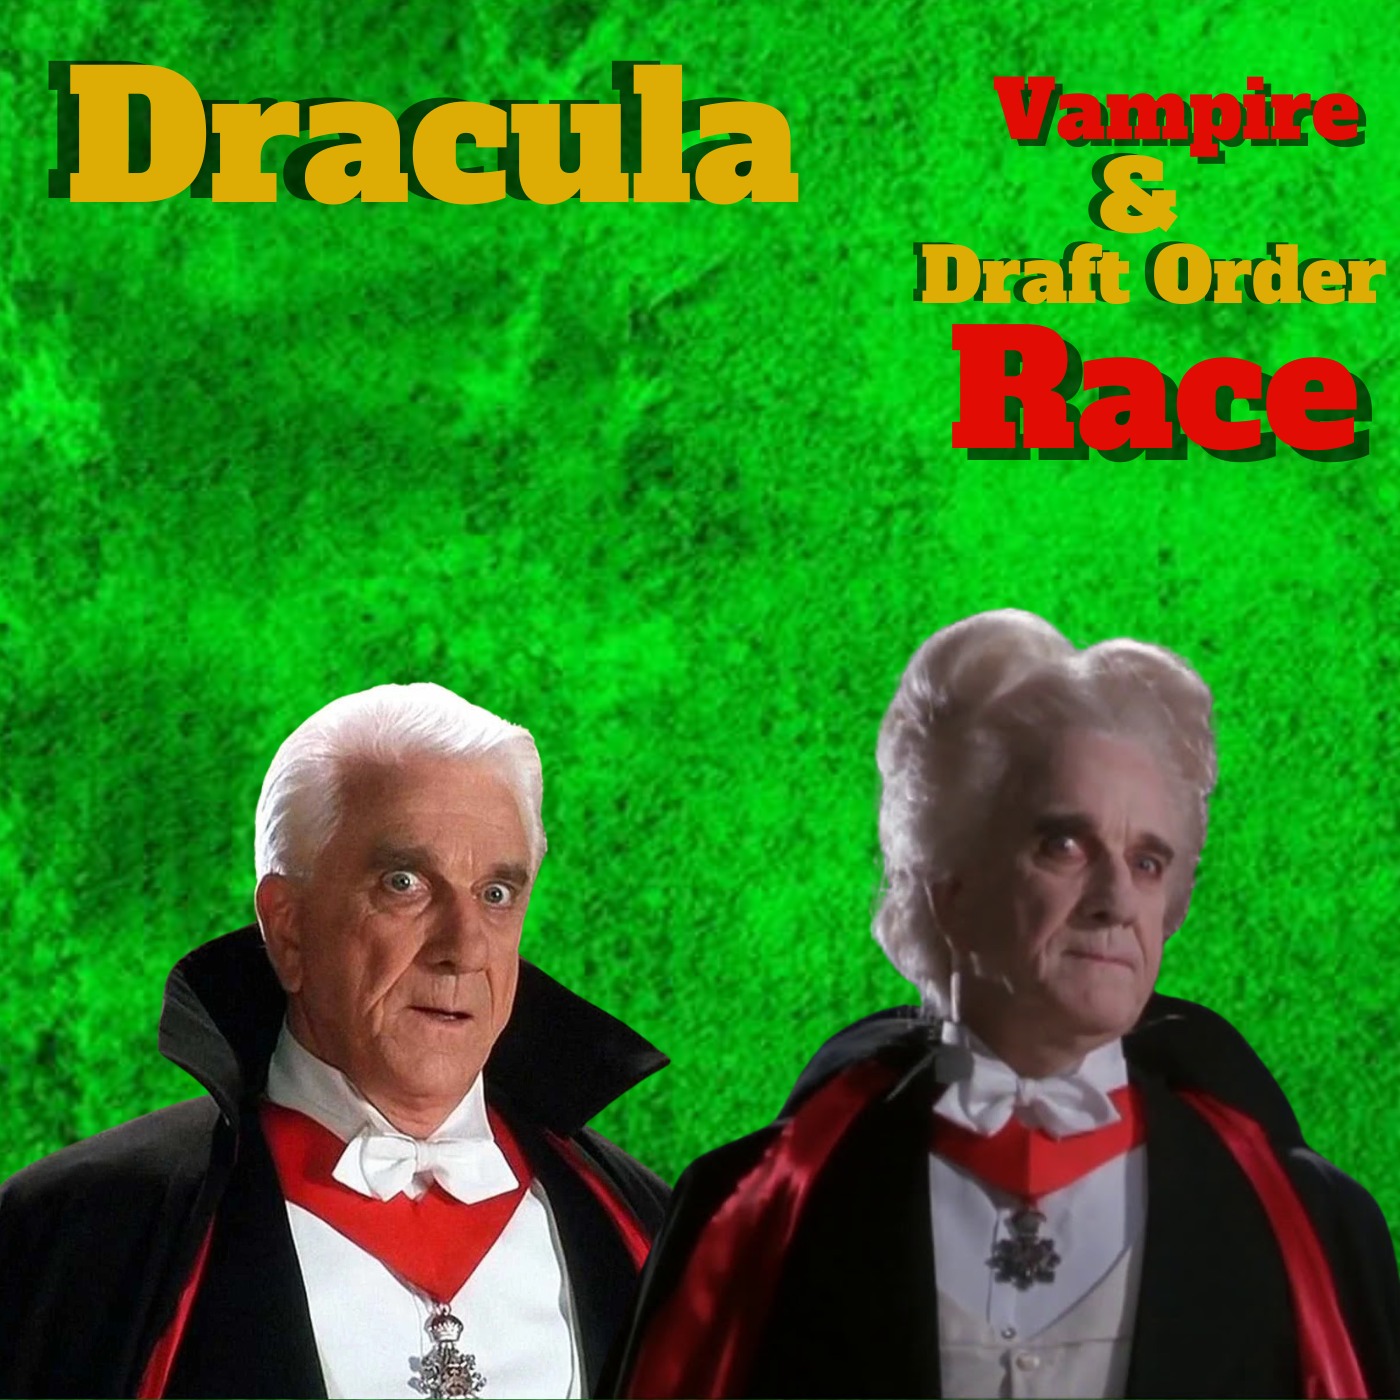 Dracula Vampire League Vampire & Draft Order Race Image